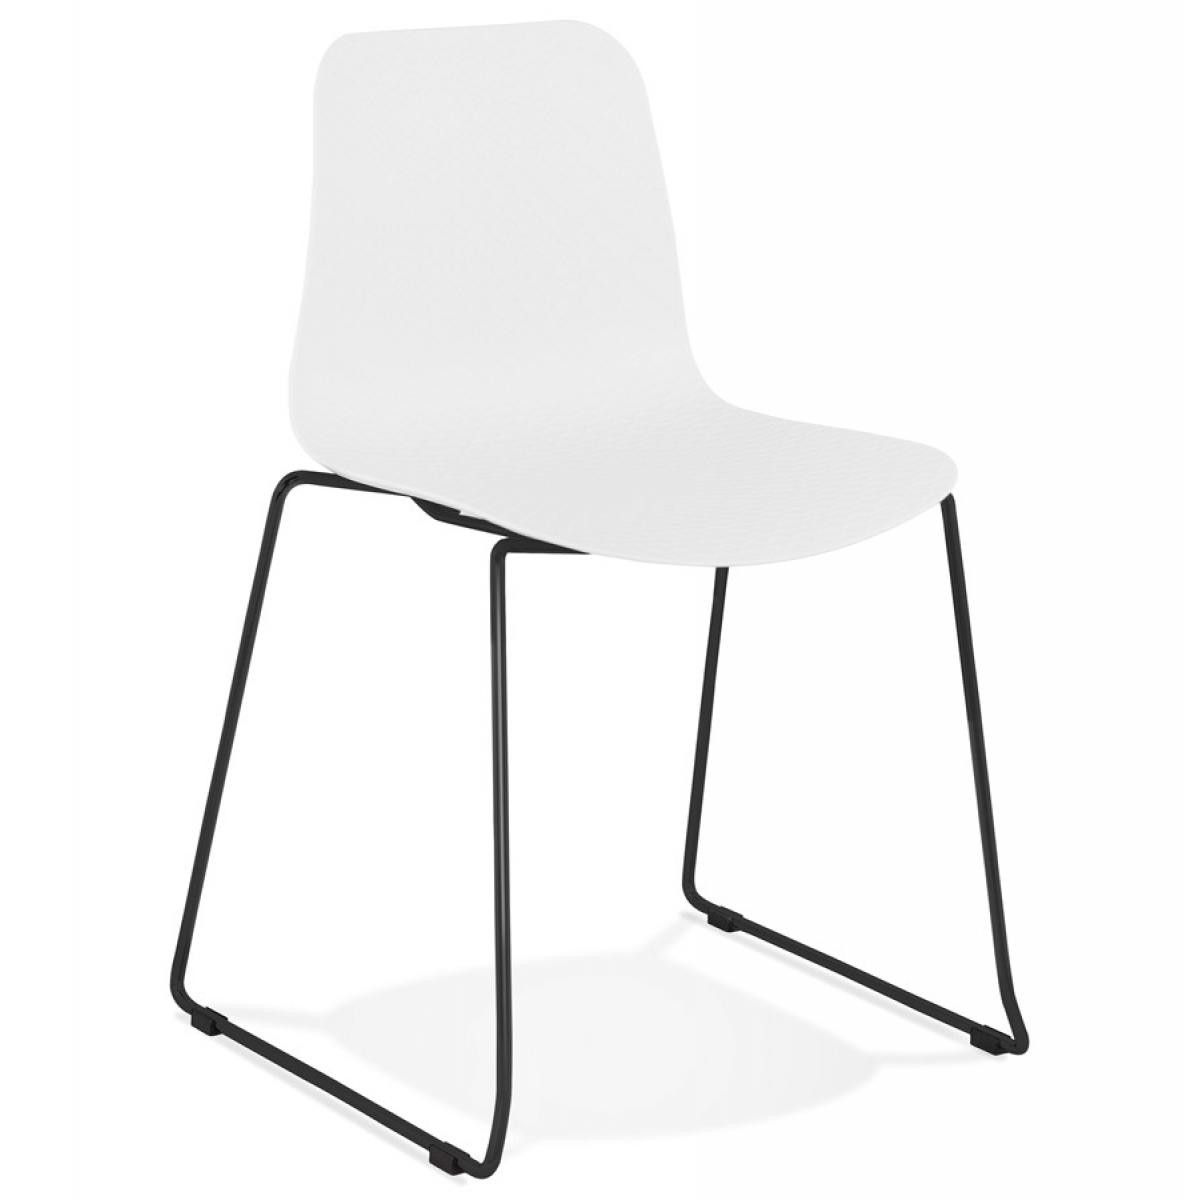 Alterego - Chaise moderne 'EXPO' blanche avec pieds en métal noir - Chaises